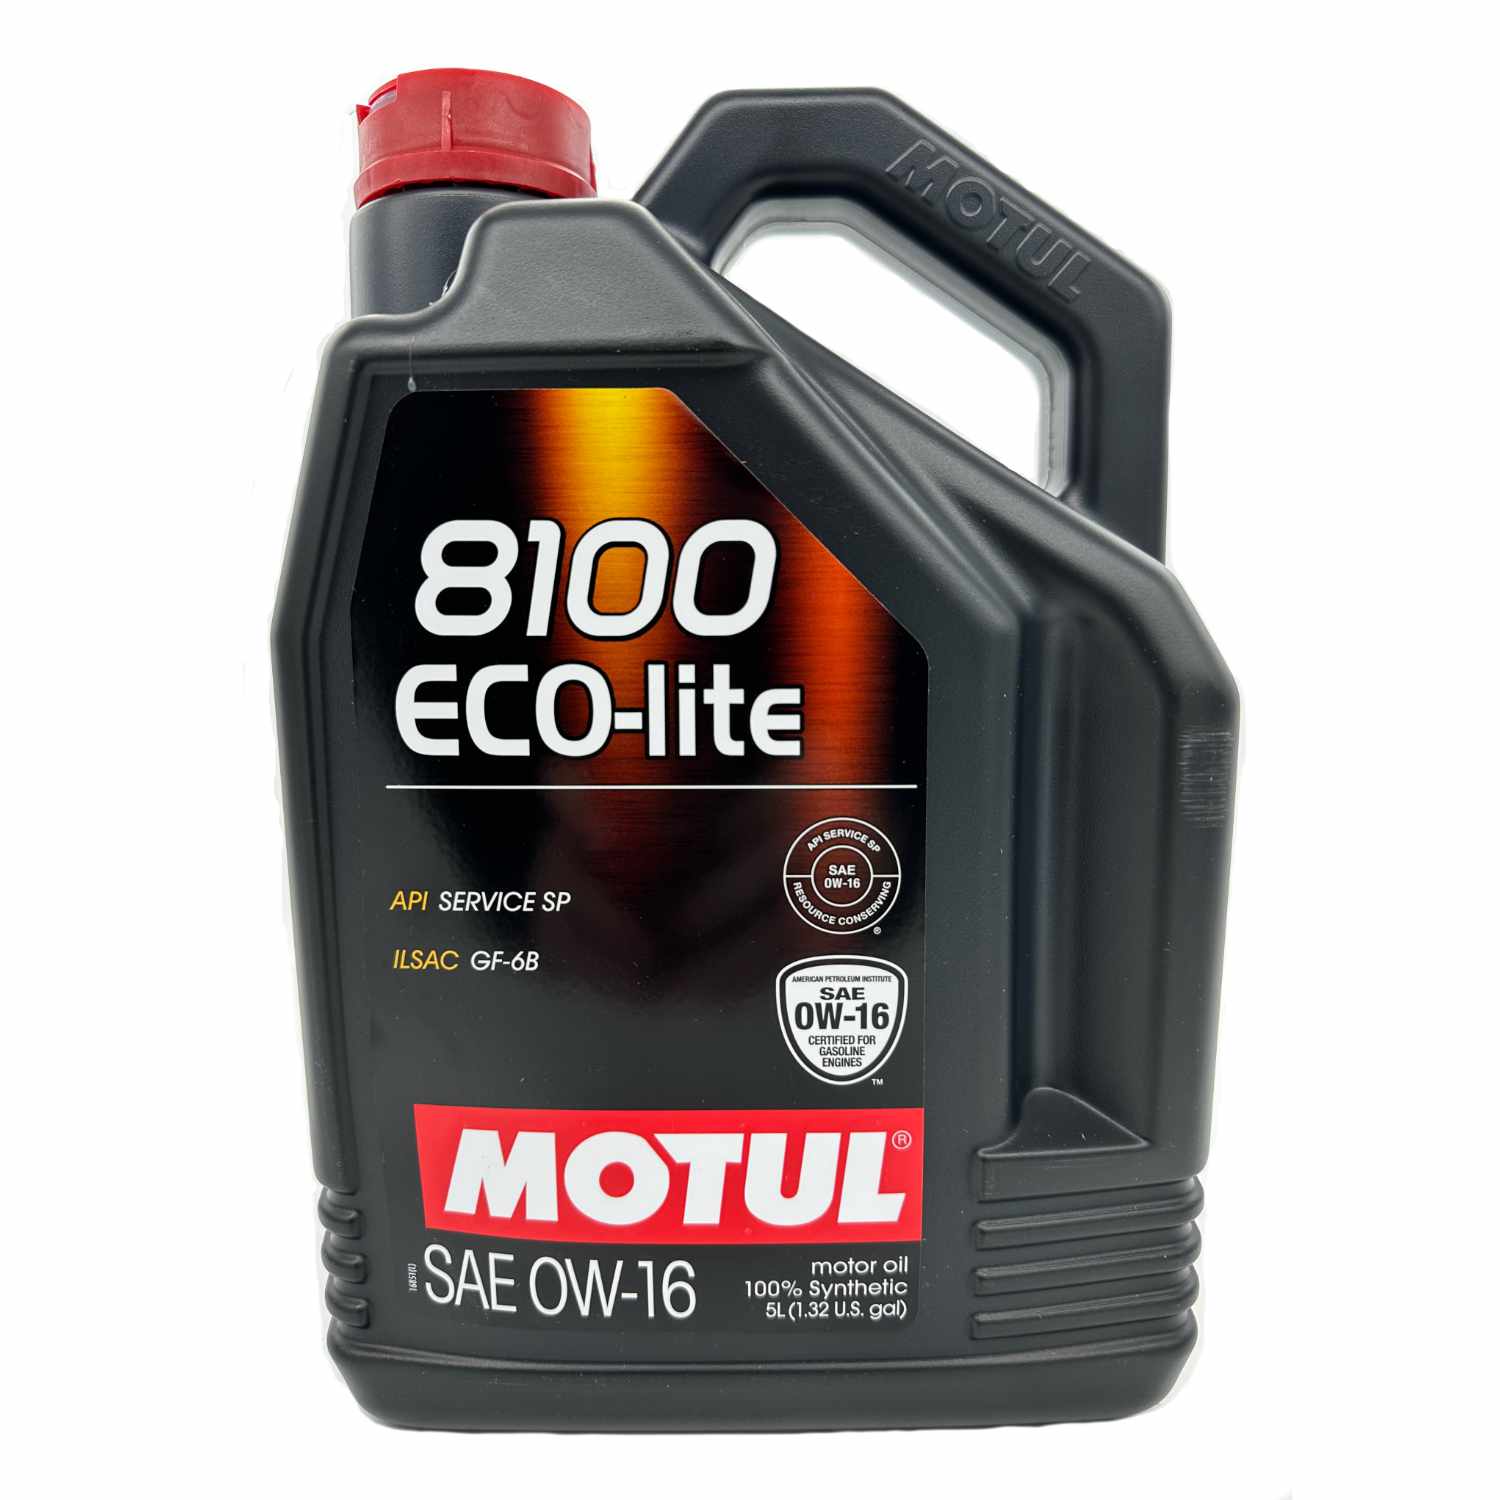 Motul 8100 ECO-LITE Motor Oil 0W-16 - 5 Liter